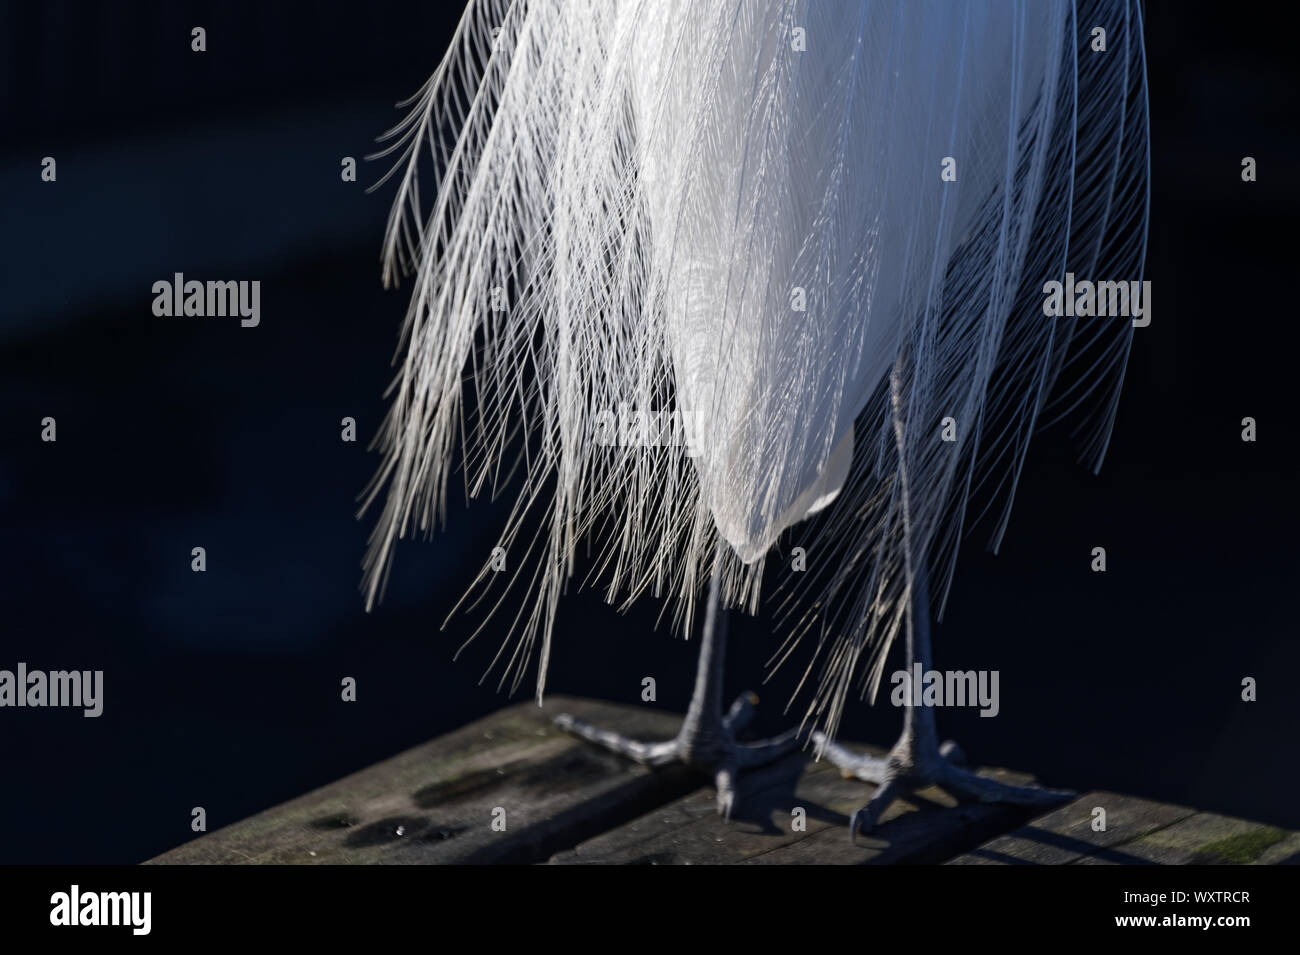 Les plumes blanches d'un héron blanc en plein désarroi Banque D'Images